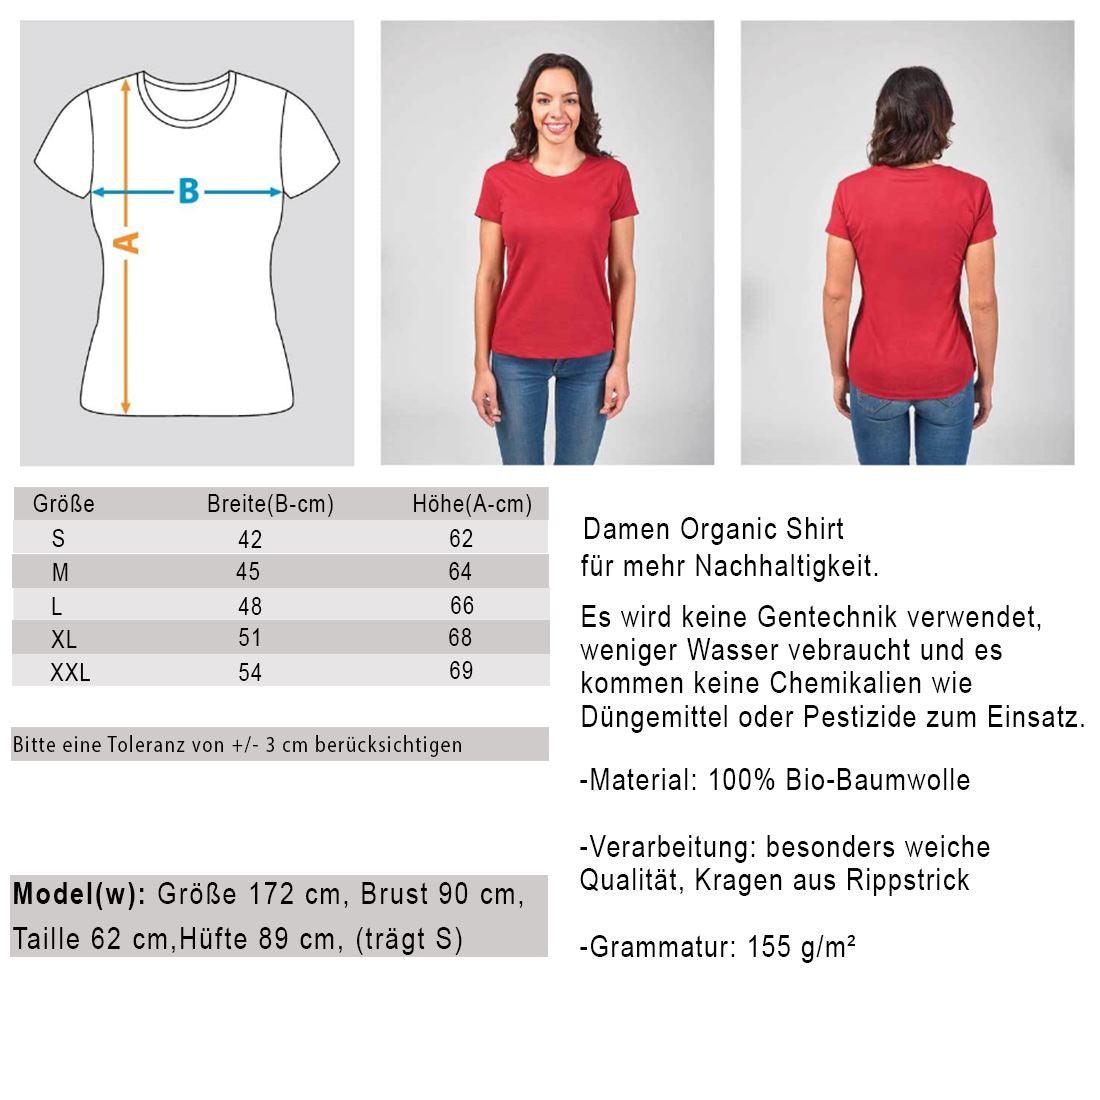 Lasst die Sau raus - Damen Organic Shirt - Team Vegan © vegan t shirt